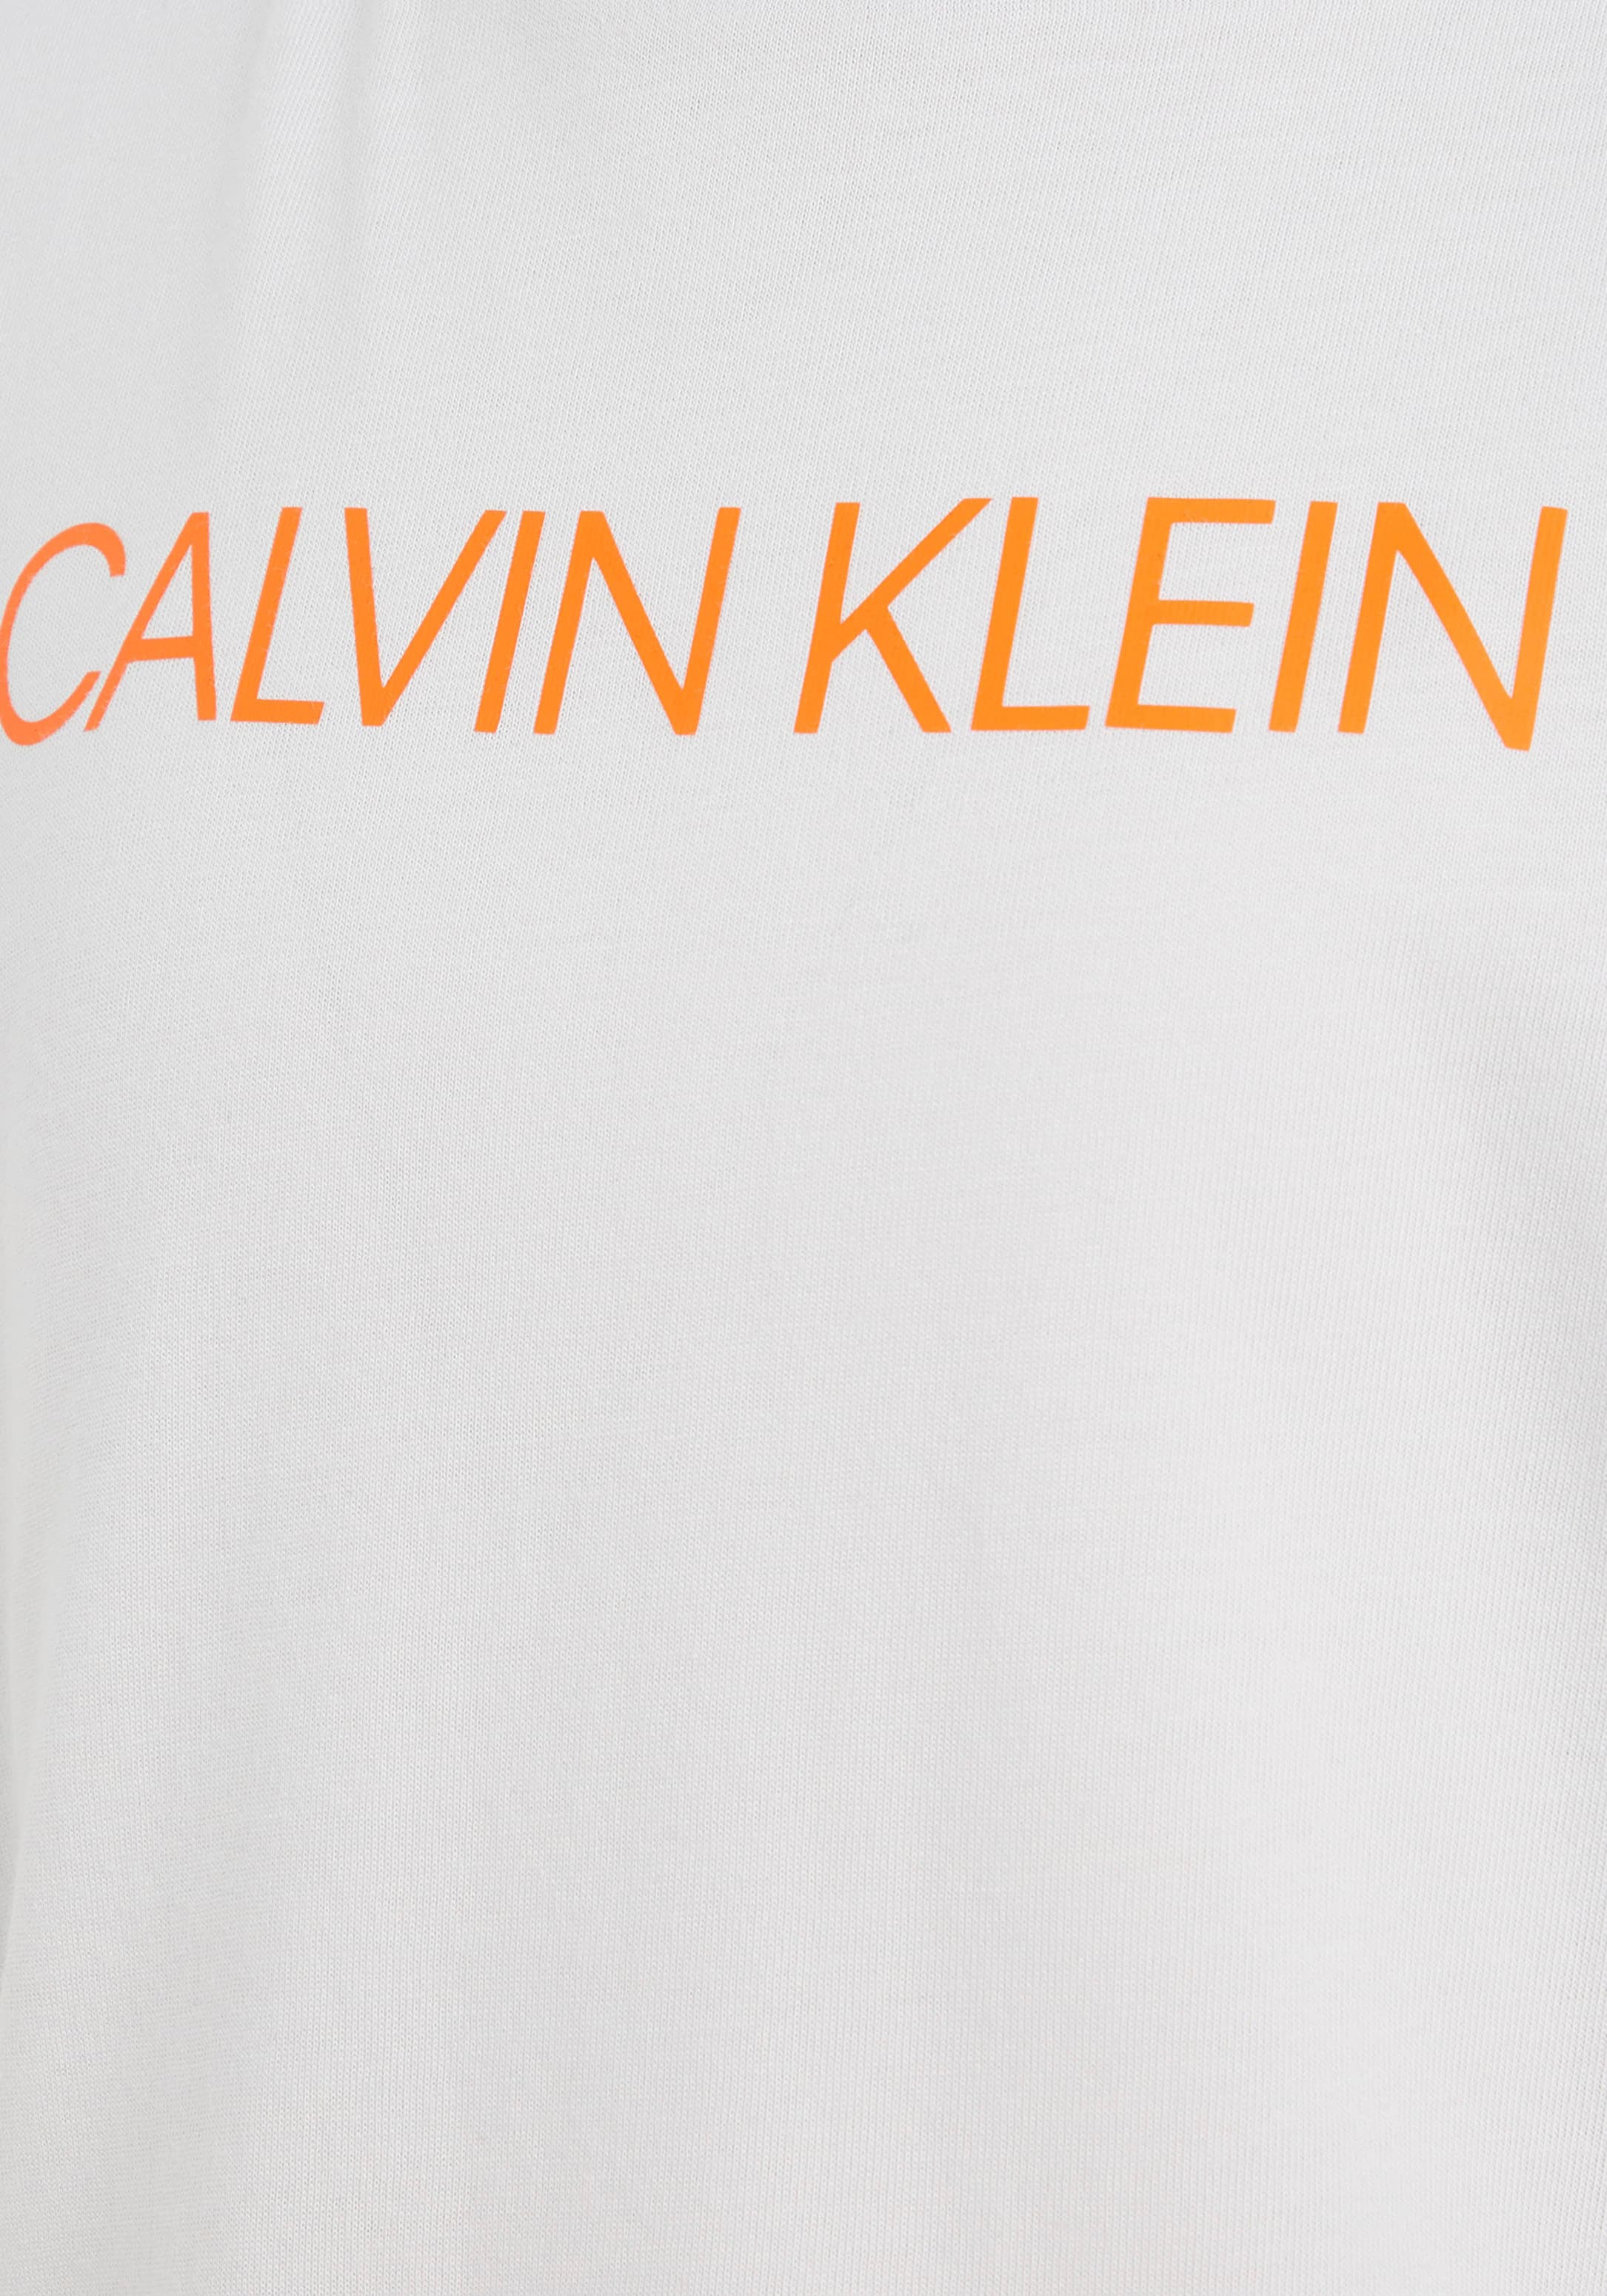 ✵ Calvin Klein Jeans T-Shirt, Kinder Kids Junior MiniMe,mit  Rundhalsausschnitt online kaufen | Jelmoli-Versand